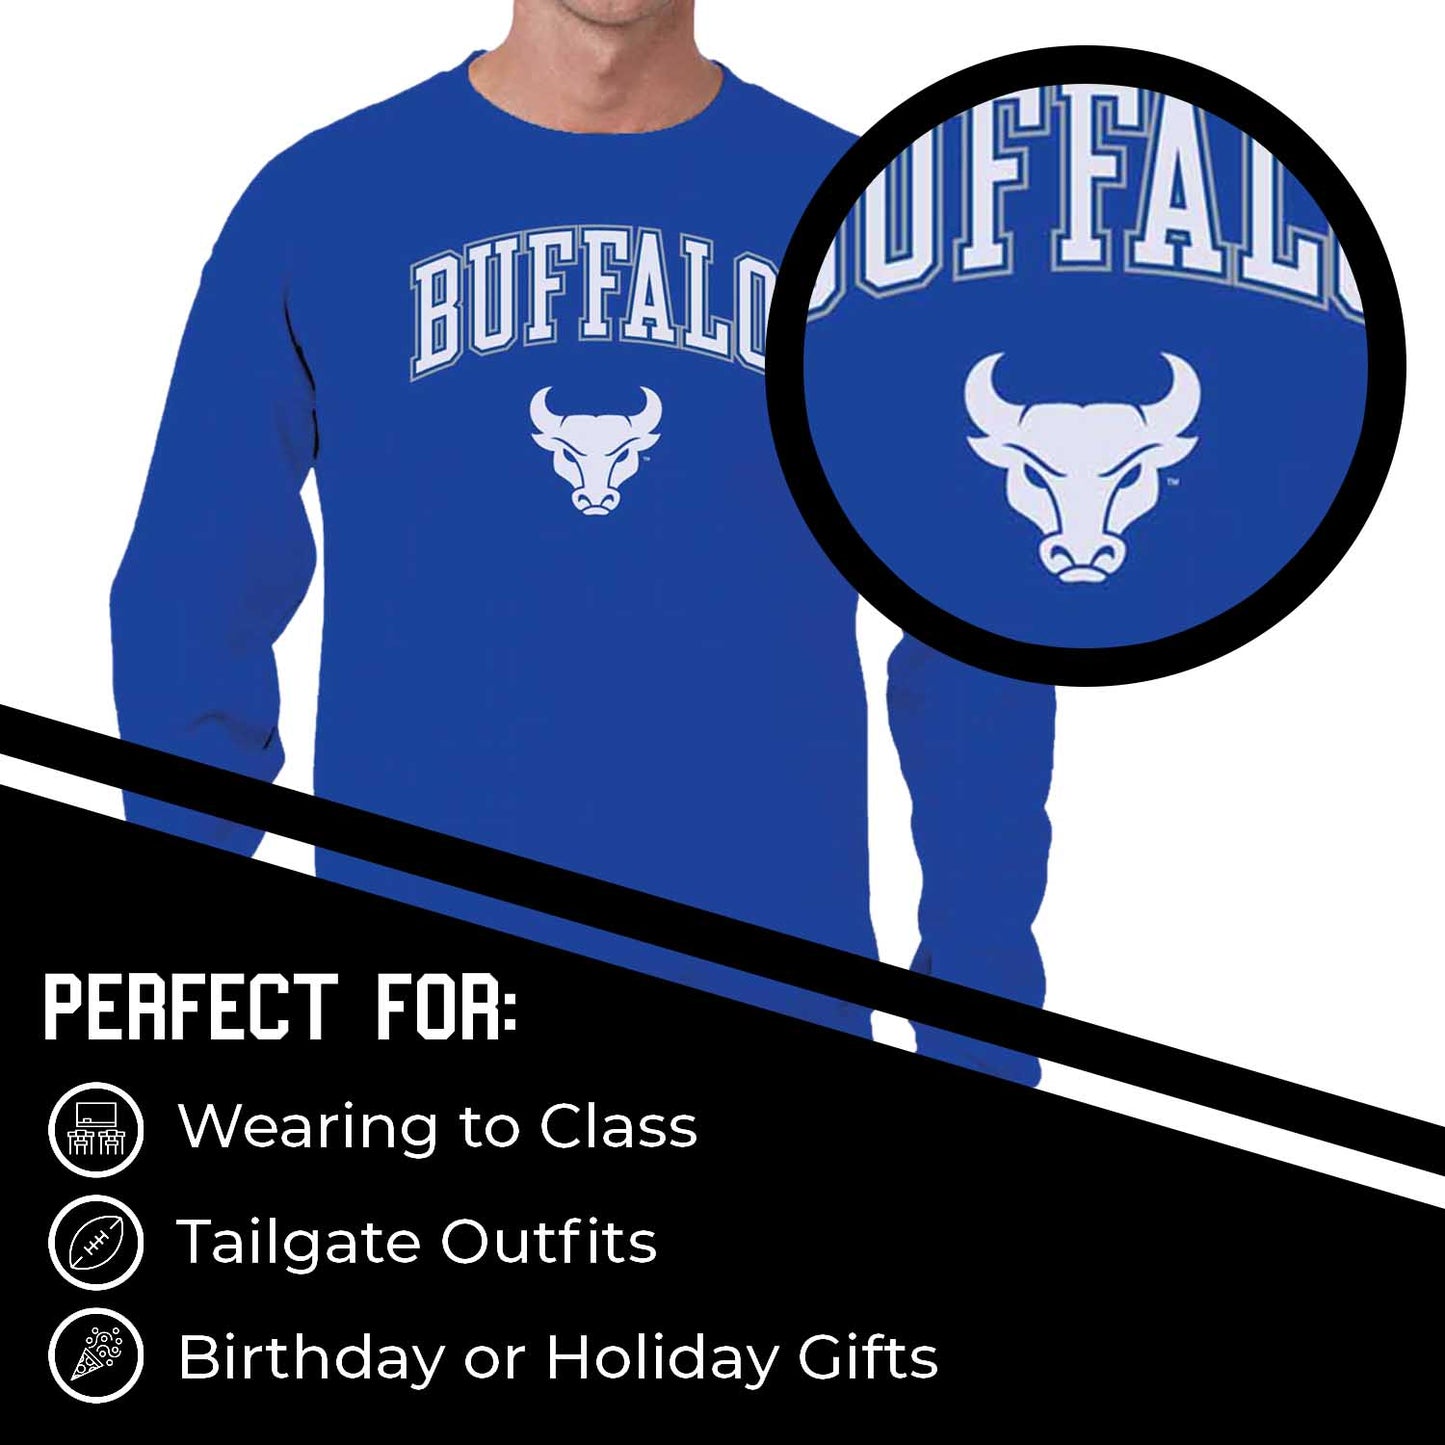 Buffalo Bulls Adult Arch & Logo Soft Style Gameday Crewneck Sweatshirt - Royal